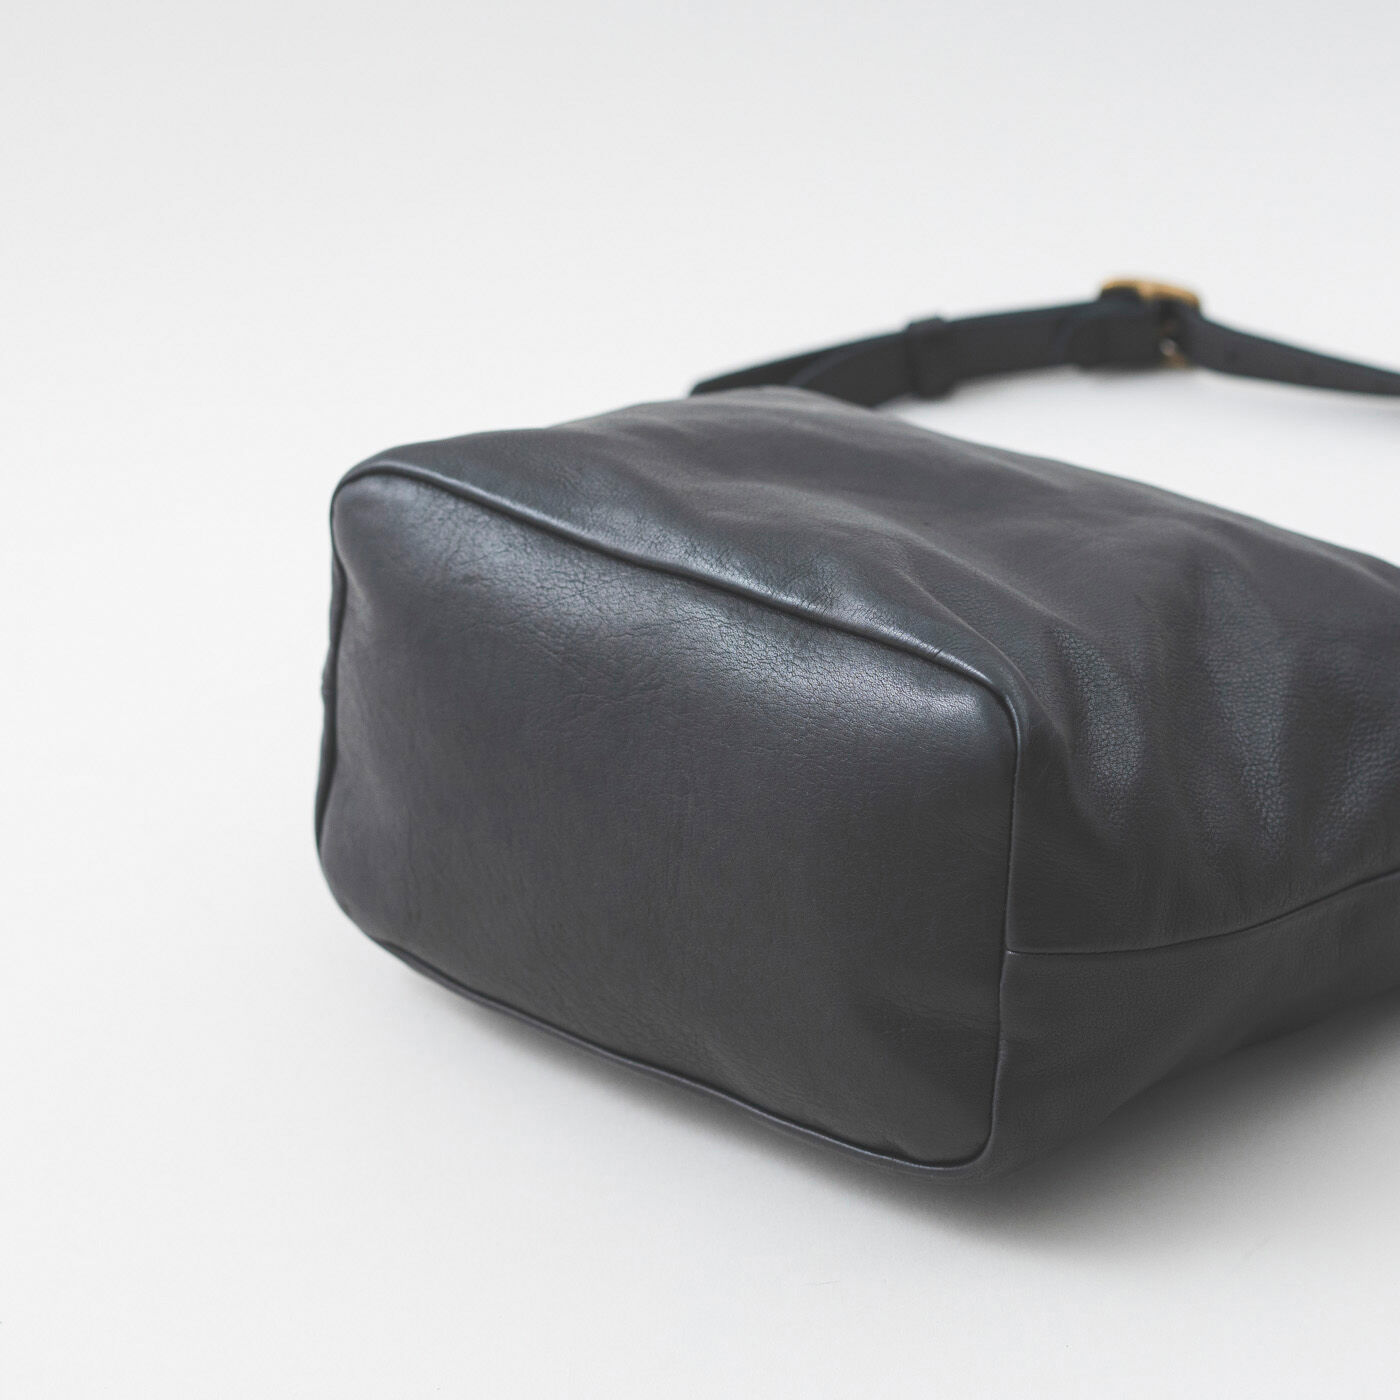 ＆Stories|福岡の鞄作家と作った 職人本革のエトランドルバッグ〈ブラック〉|サイドと底のまちが広く、容量もたっぷり。